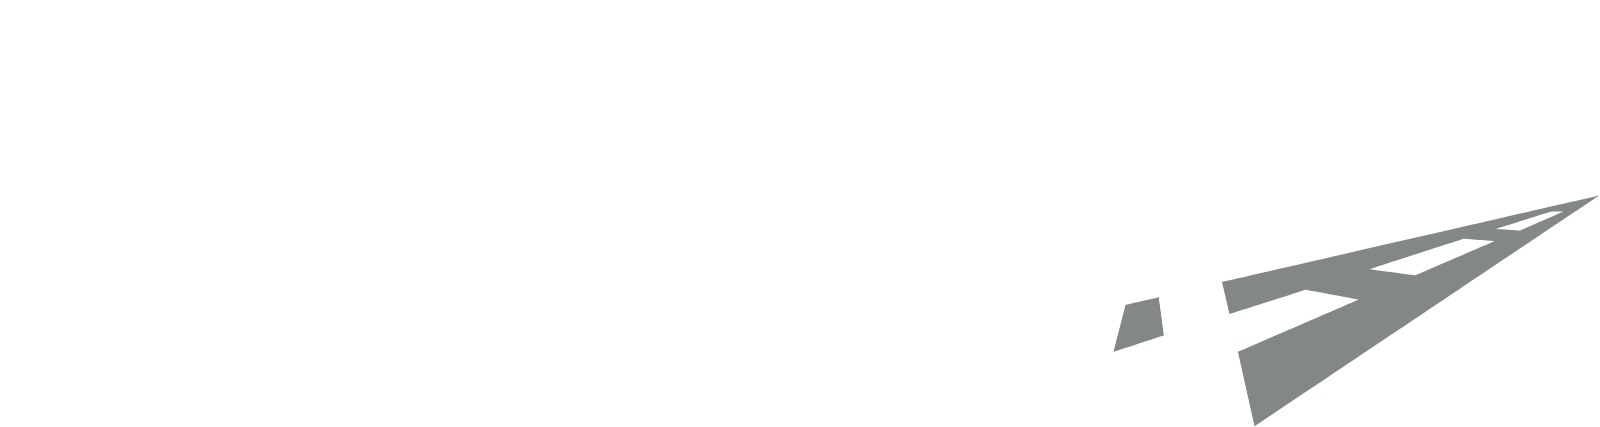 Atlas Arteria logo large for dark backgrounds (transparent PNG)